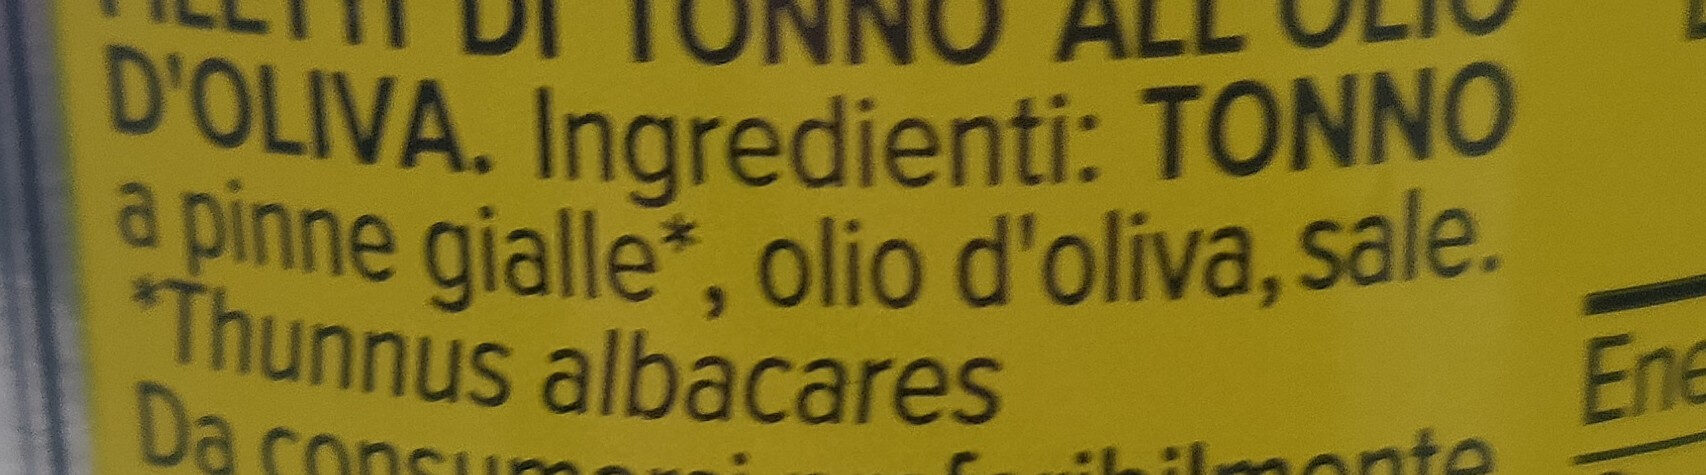 Filetti di tonno in olio di oliva - Ingredienti